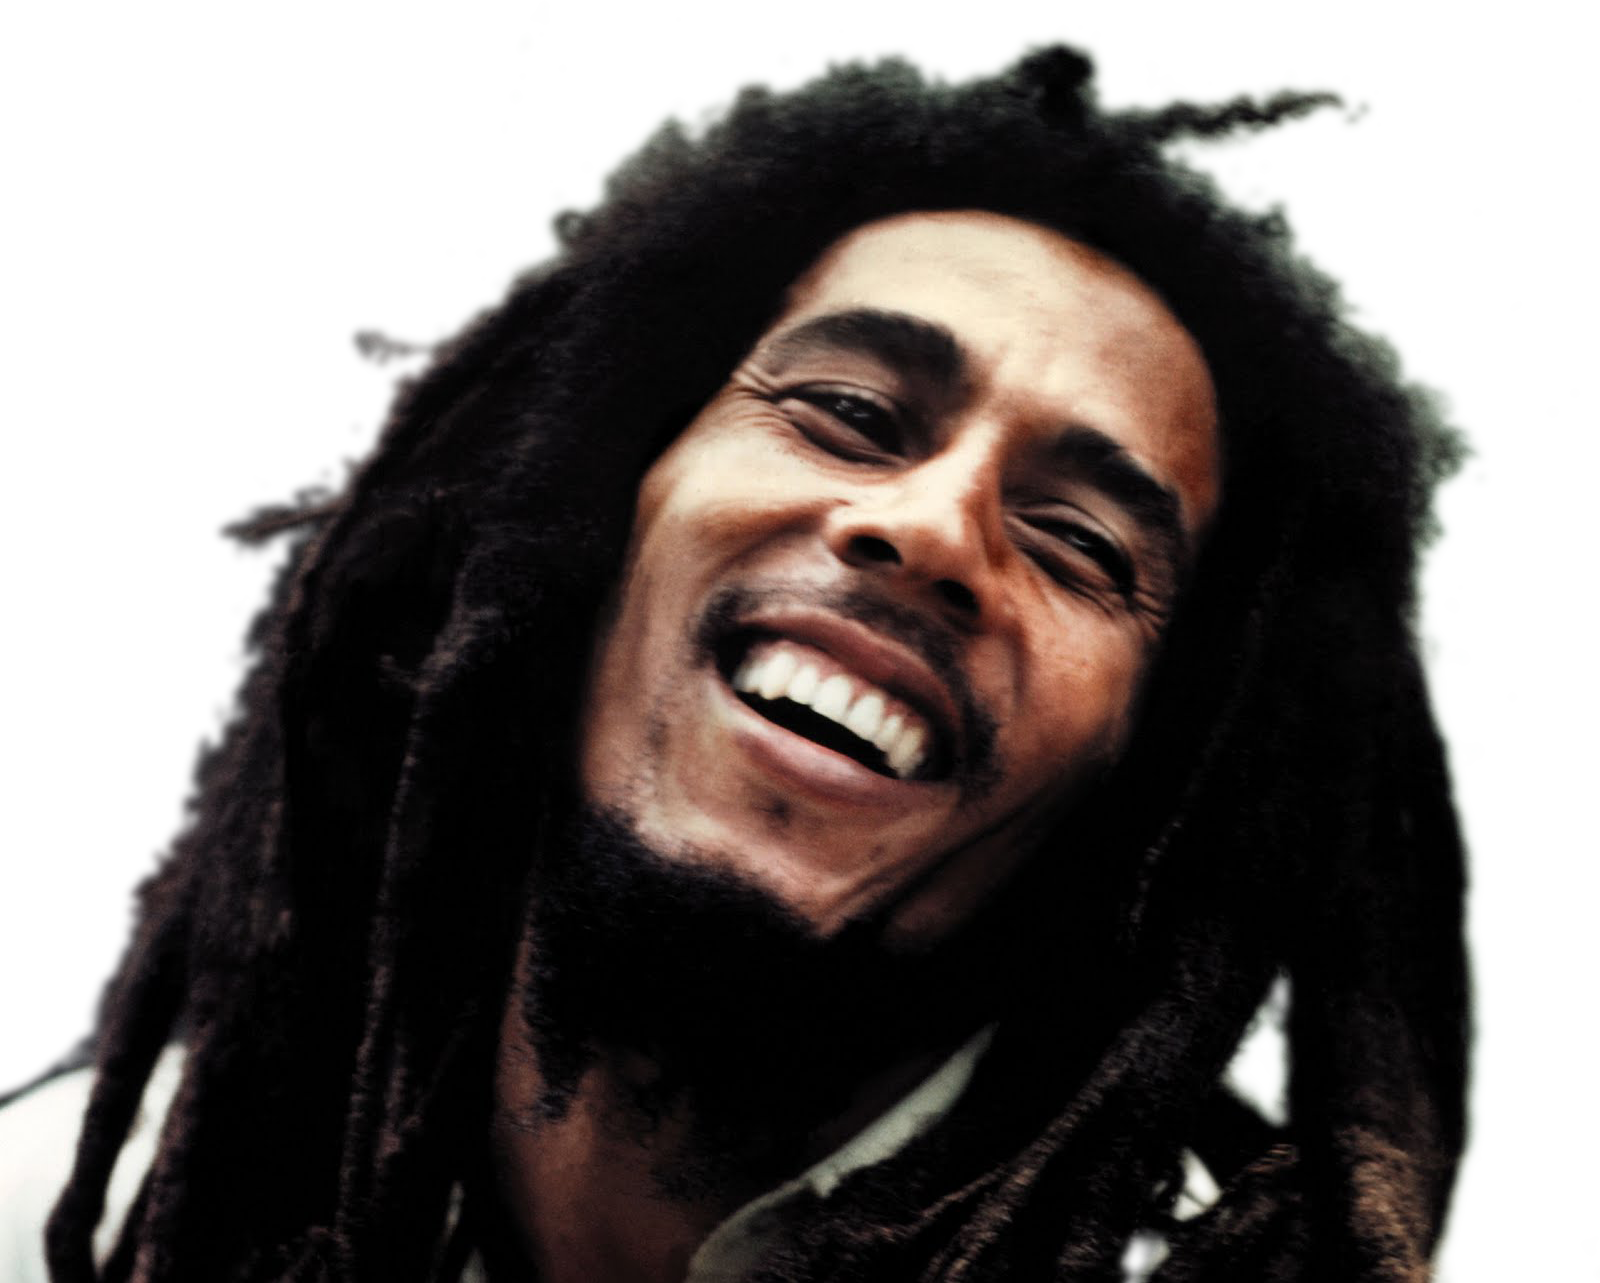 Download Bob Marley Free Download Hq Png Image Freepngimg